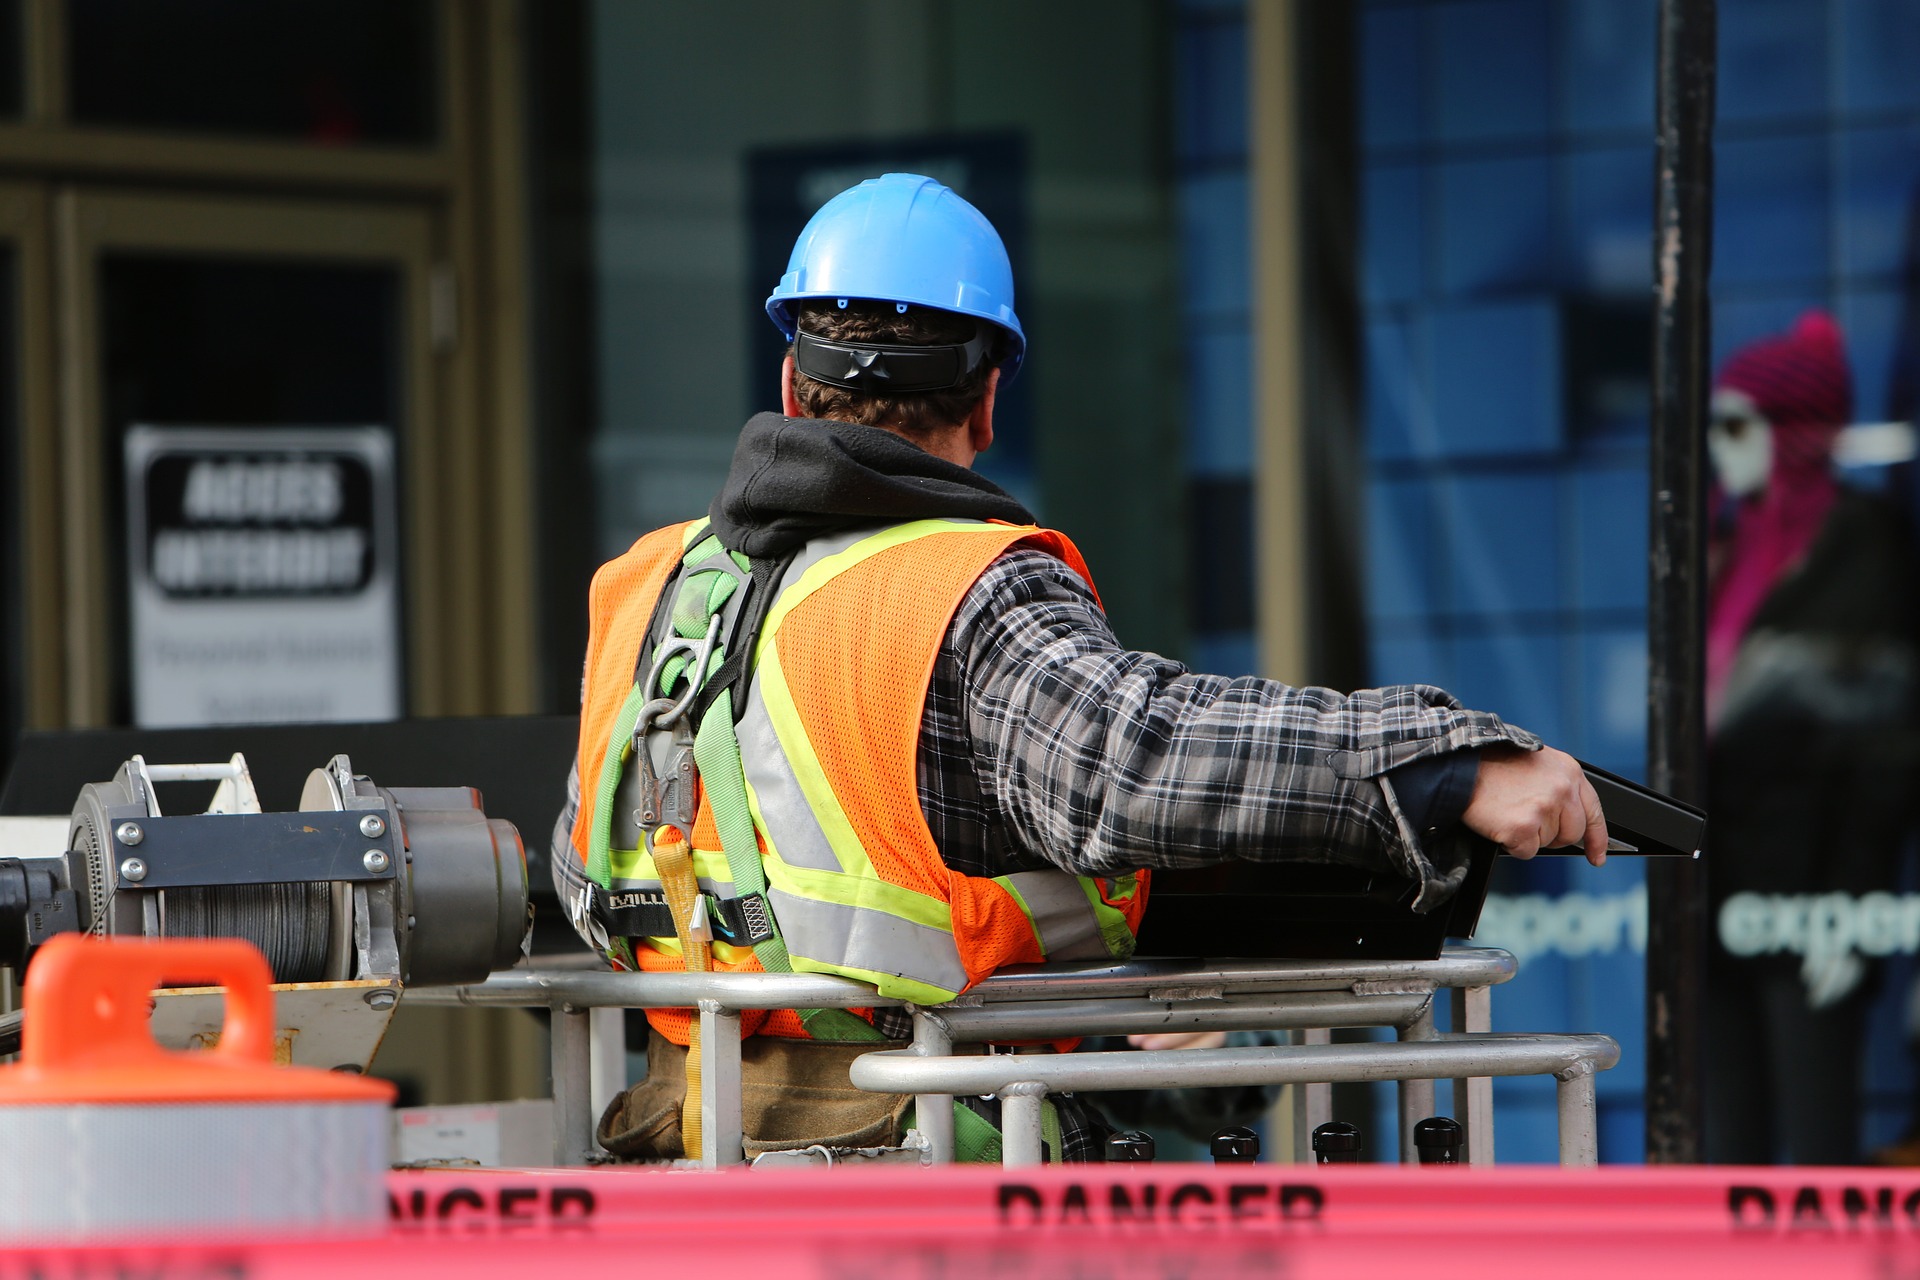 La supervisión de los procesos de construcción es un aspecto de la seguridad de la construcción que nunca se debe descuidar.